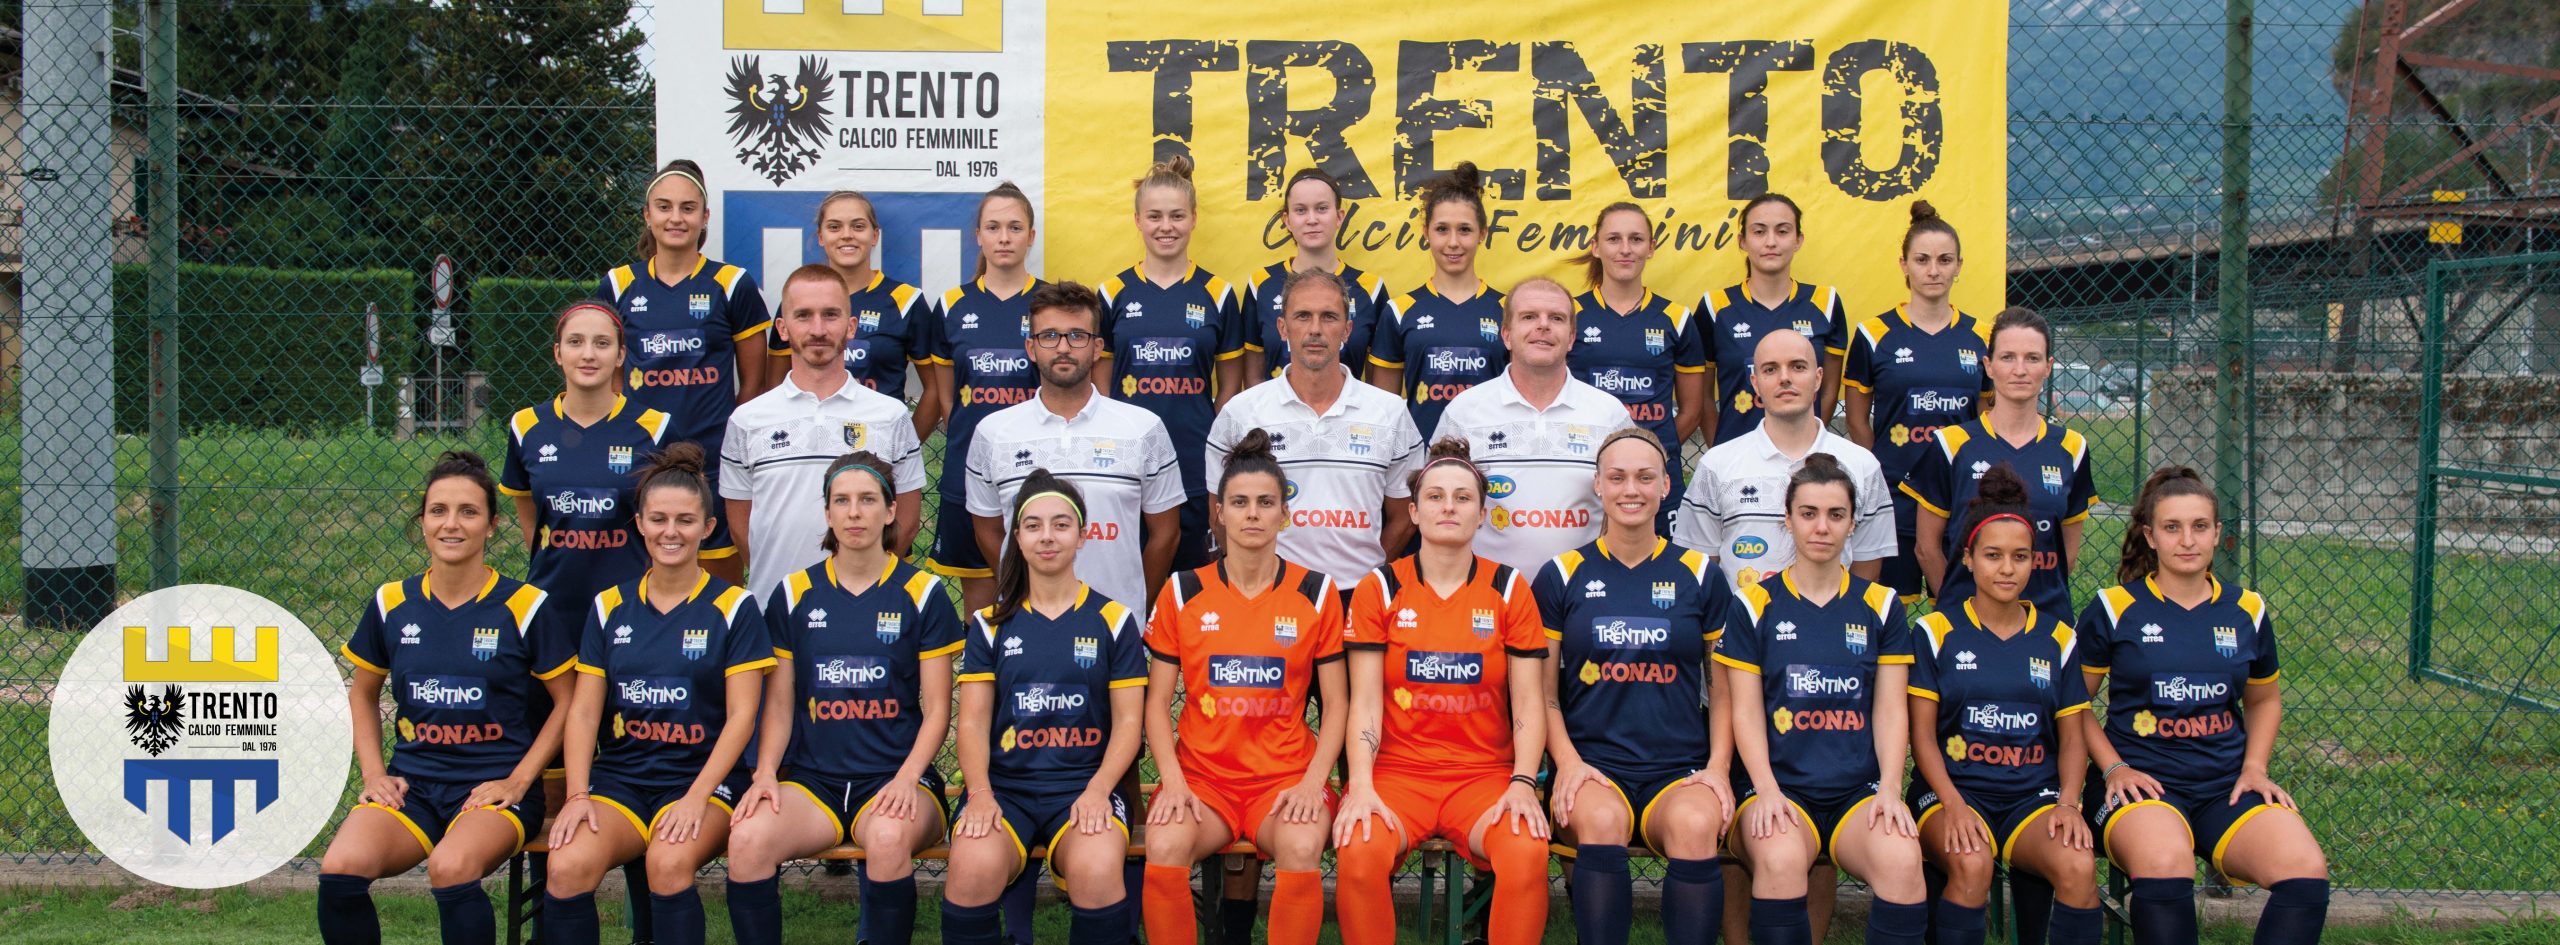 Trento Calcio Femminile